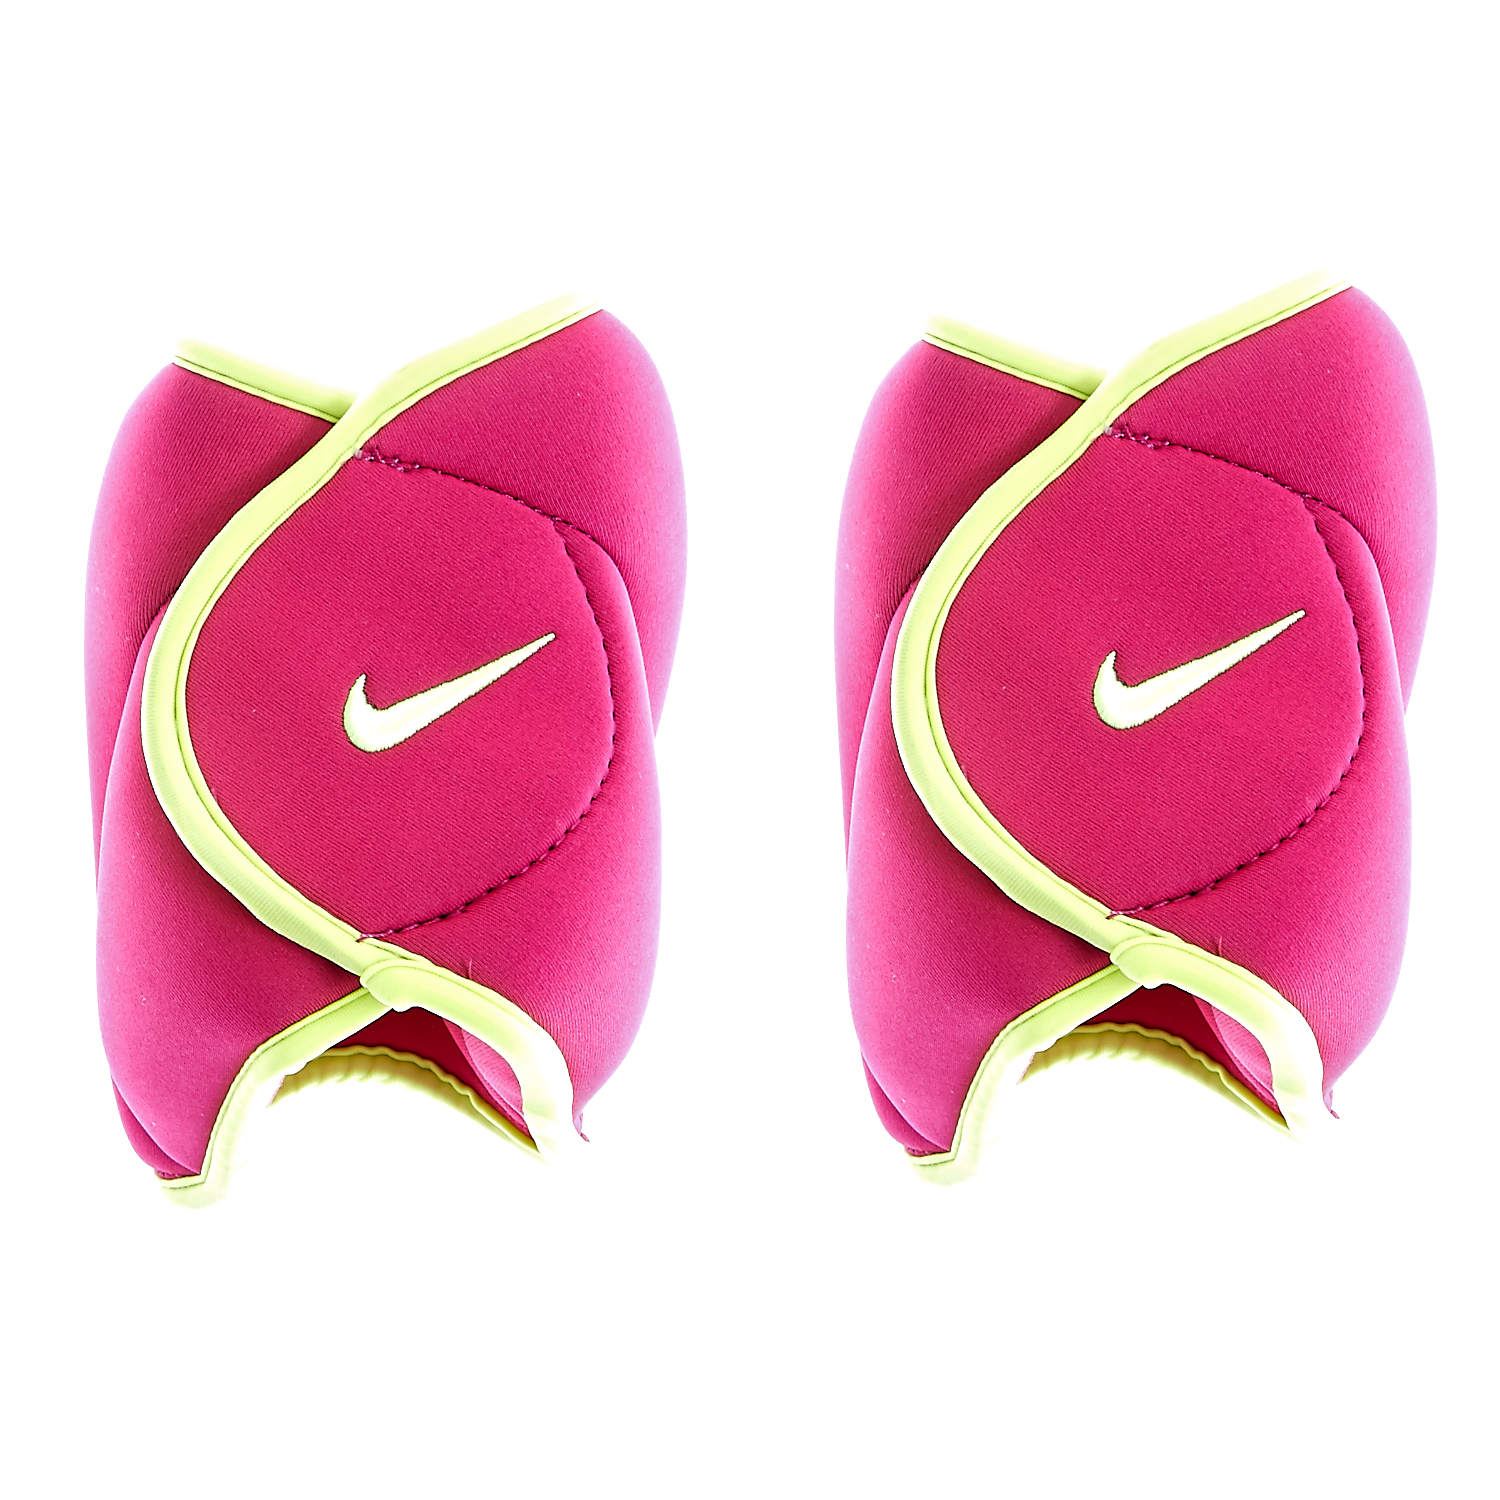 Γυναικεία/Αξεσουάρ/Αθλητικά Είδη/Εξοπλισμός NIKE - Βαράκια ποδιών Nike φούξια